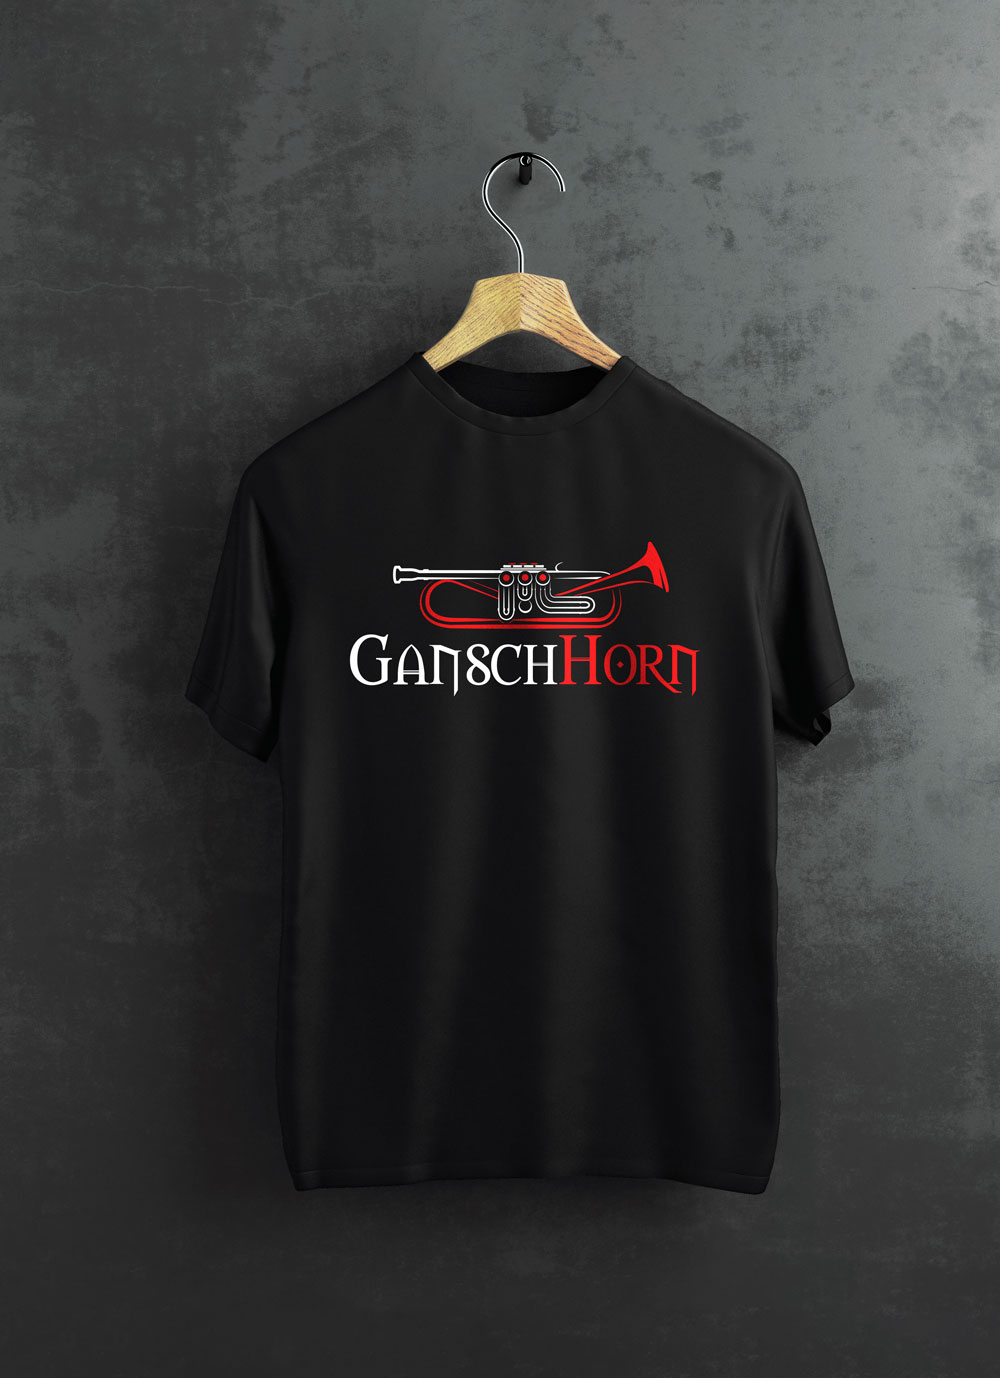 Schagerl Gansch Horn T-Shirt black LARGE 2019